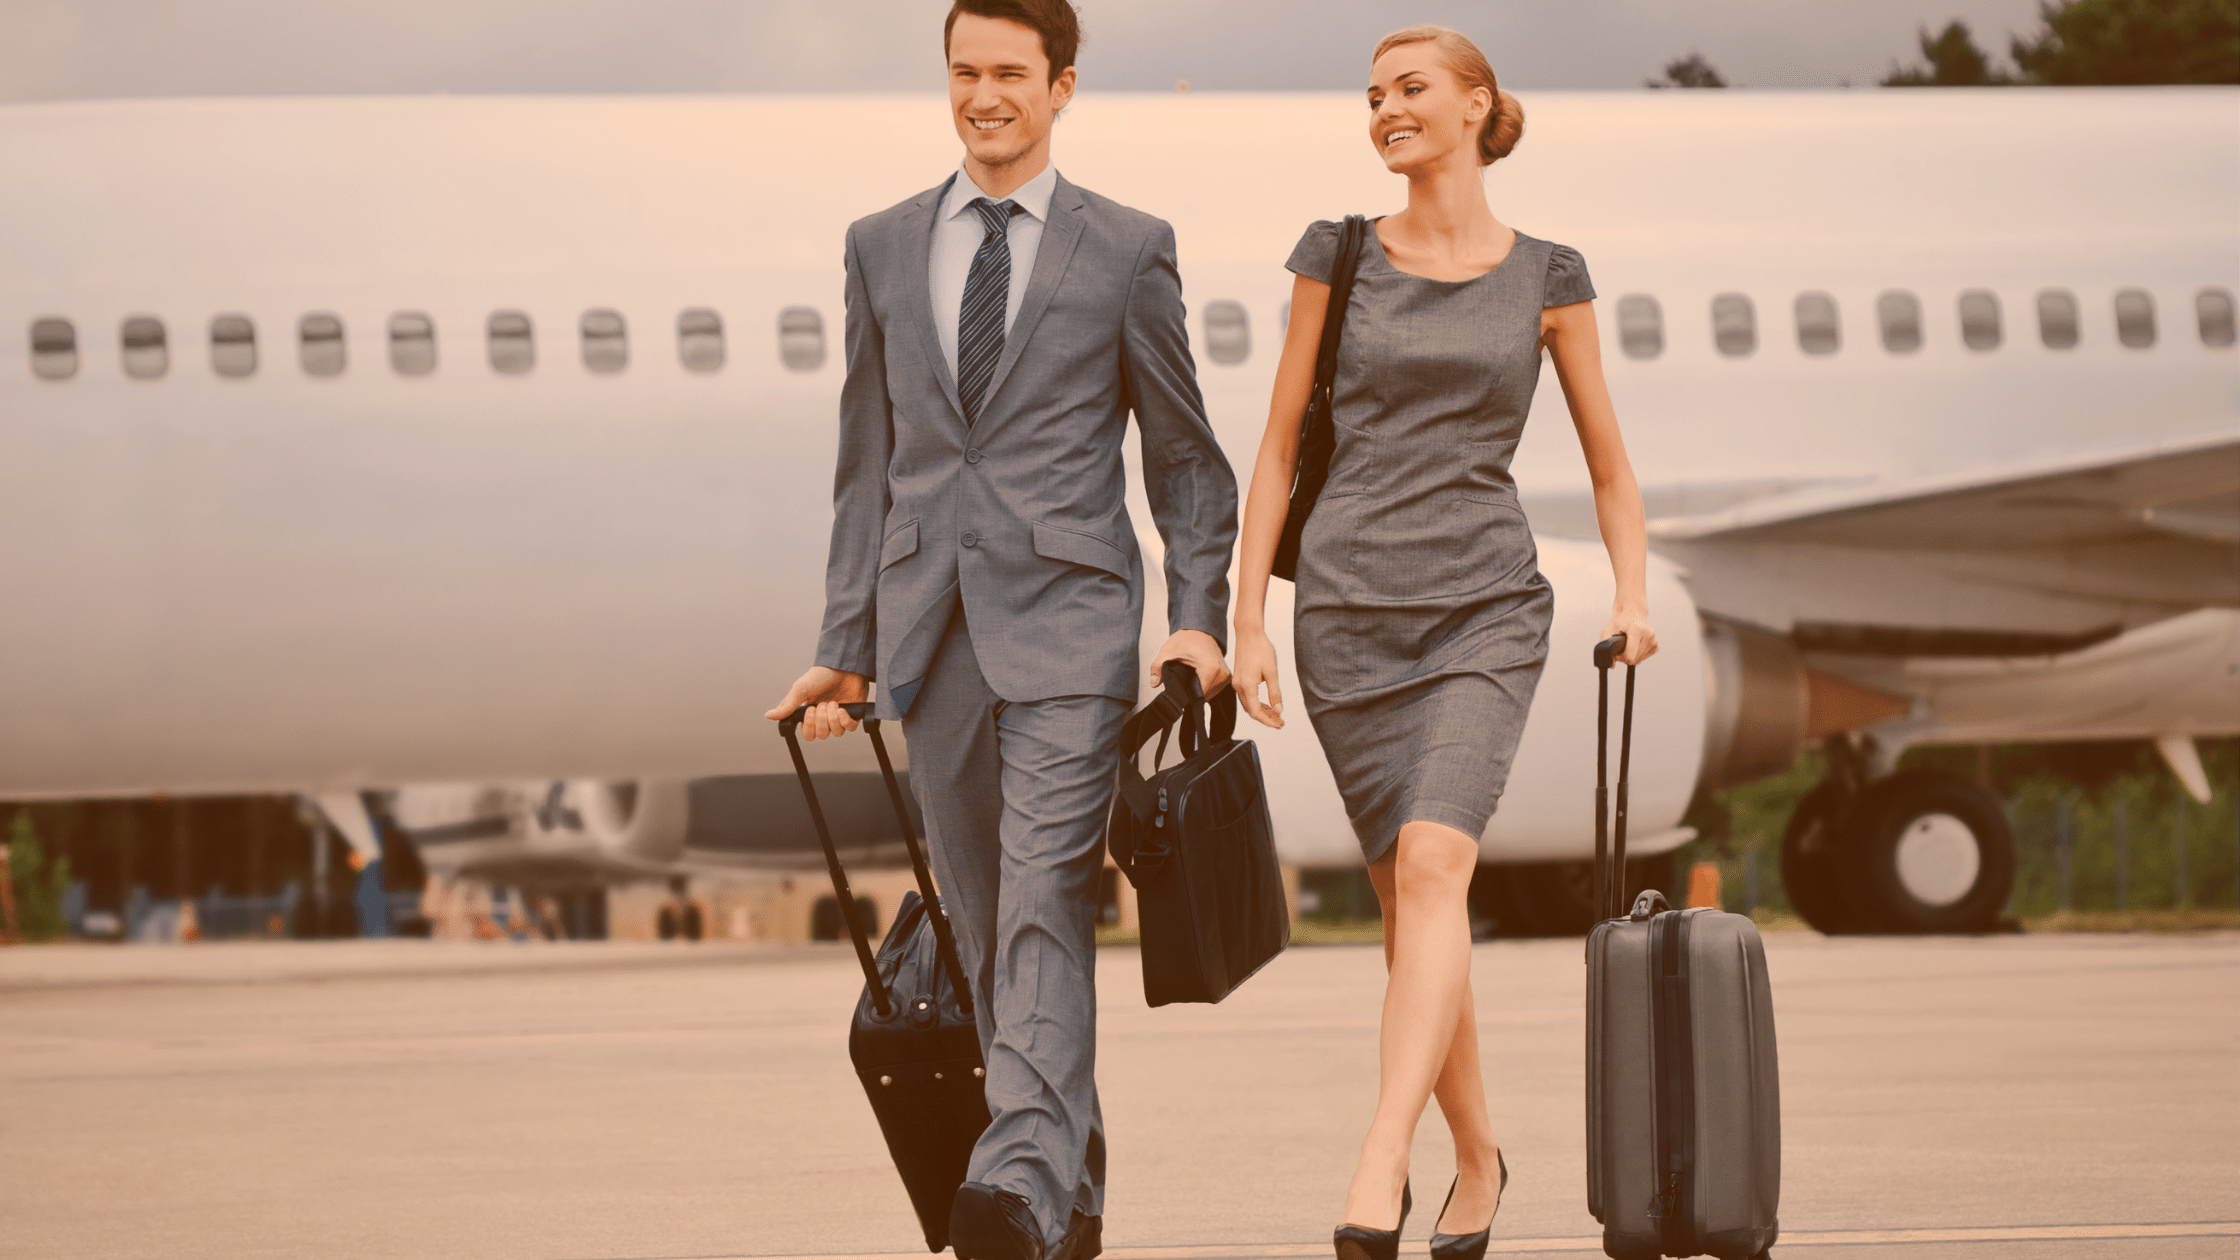 Formalnie ubrani kobieta i mężczyzna odchodzą z walizkami od samolotu.